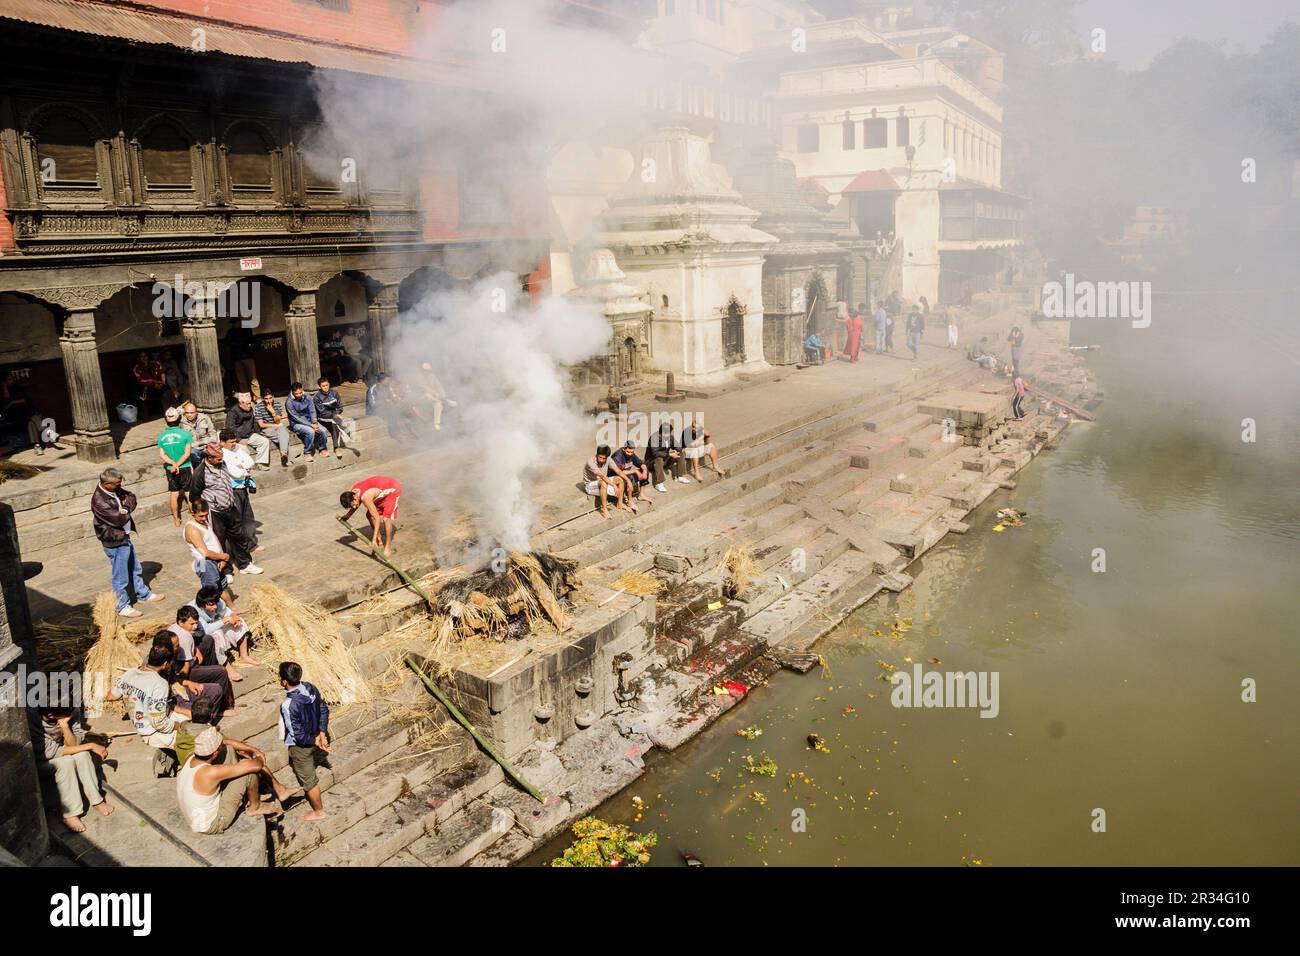 Pashupatinath, cremaciones junto al río Bagmathi, afluente del Ganges y río sagrado para los nepalíes hinduistas.Kathmandu, Nepal, Asia. Stock Photo